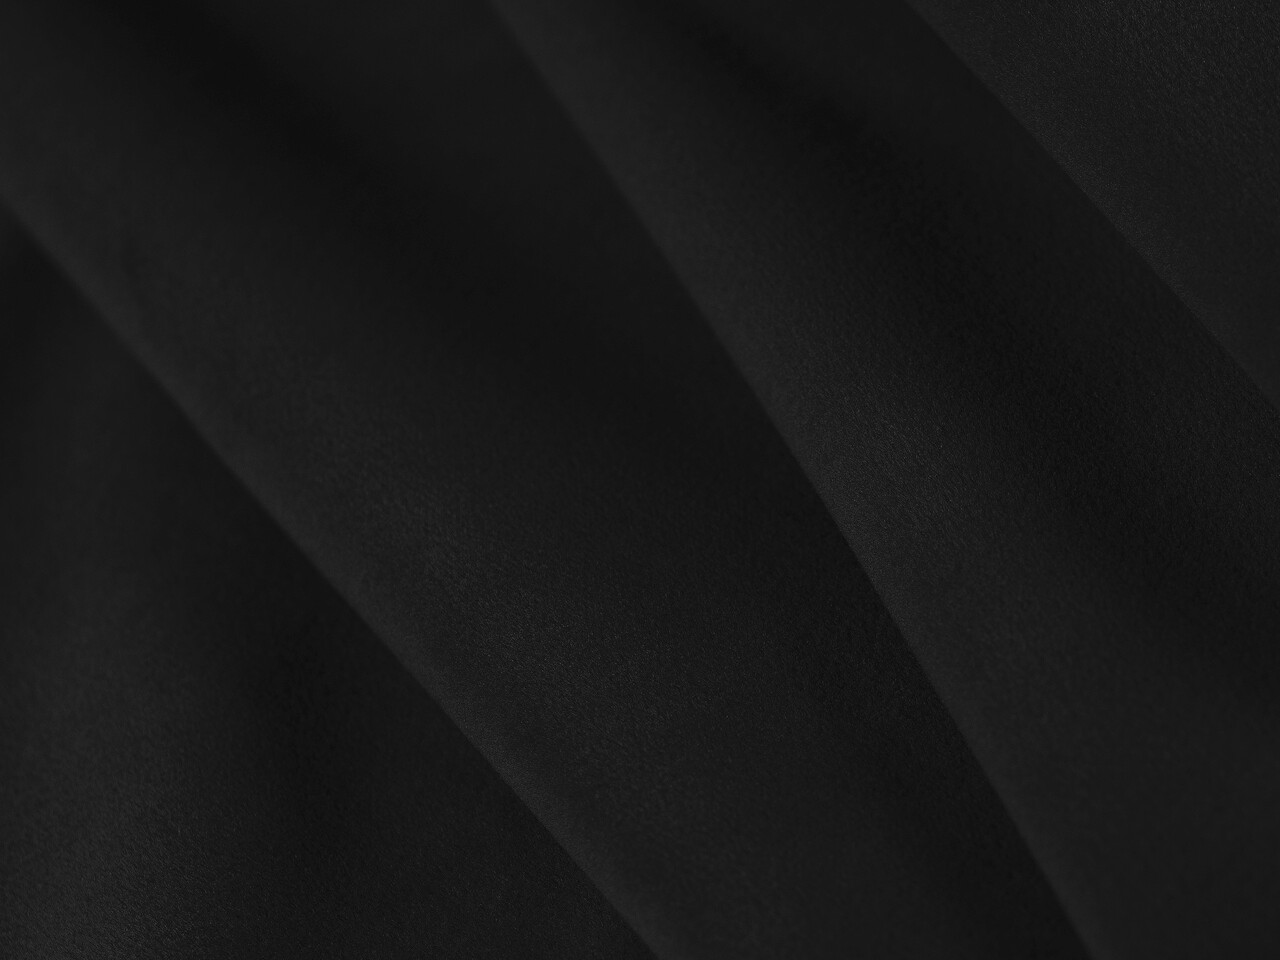 Taburet, Mackay, Cosmopolitan Design, 100x69x40 cm, catifea, negru